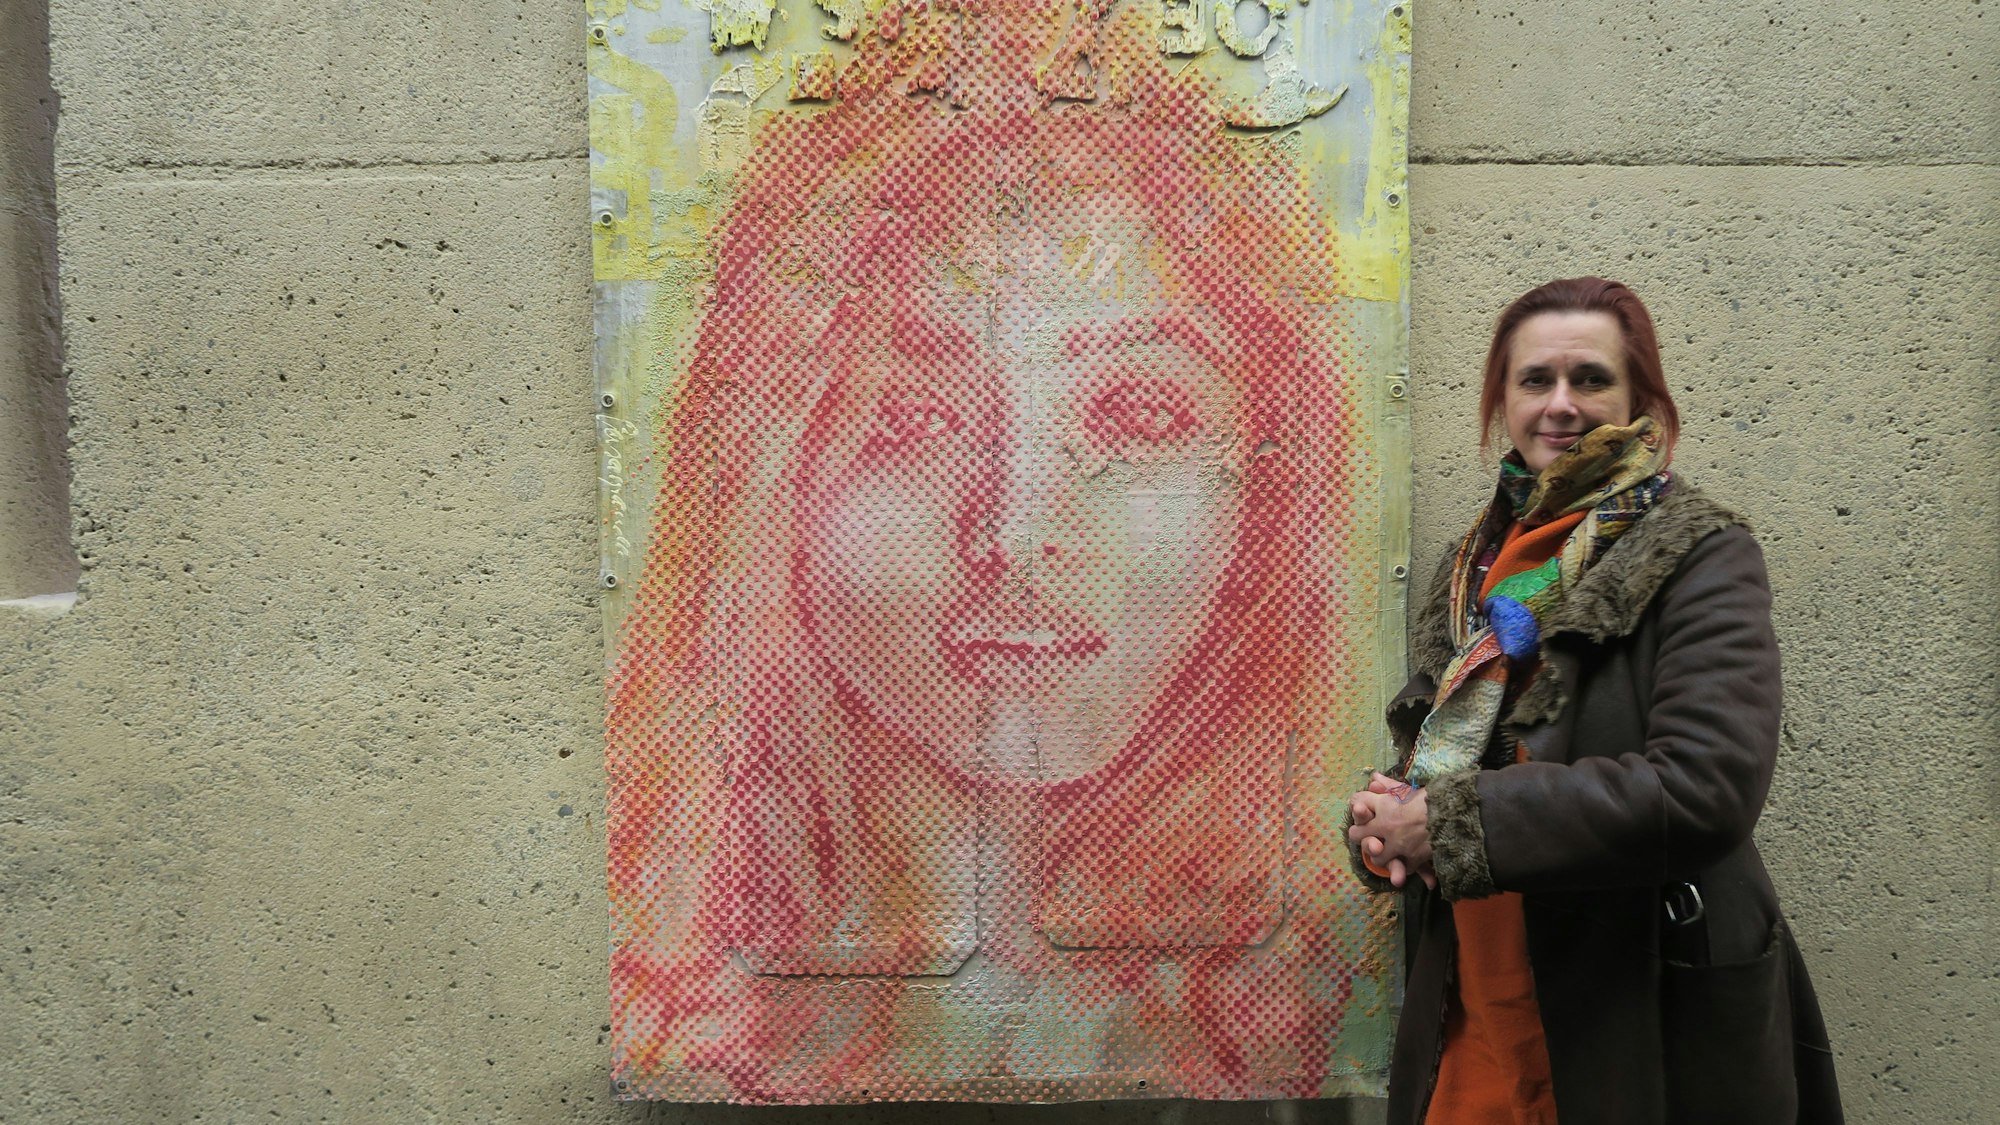 Eine Frau im braunen Mantel lehnt an einer Wand neben einem großformatigen Porträt eines Mädchens.